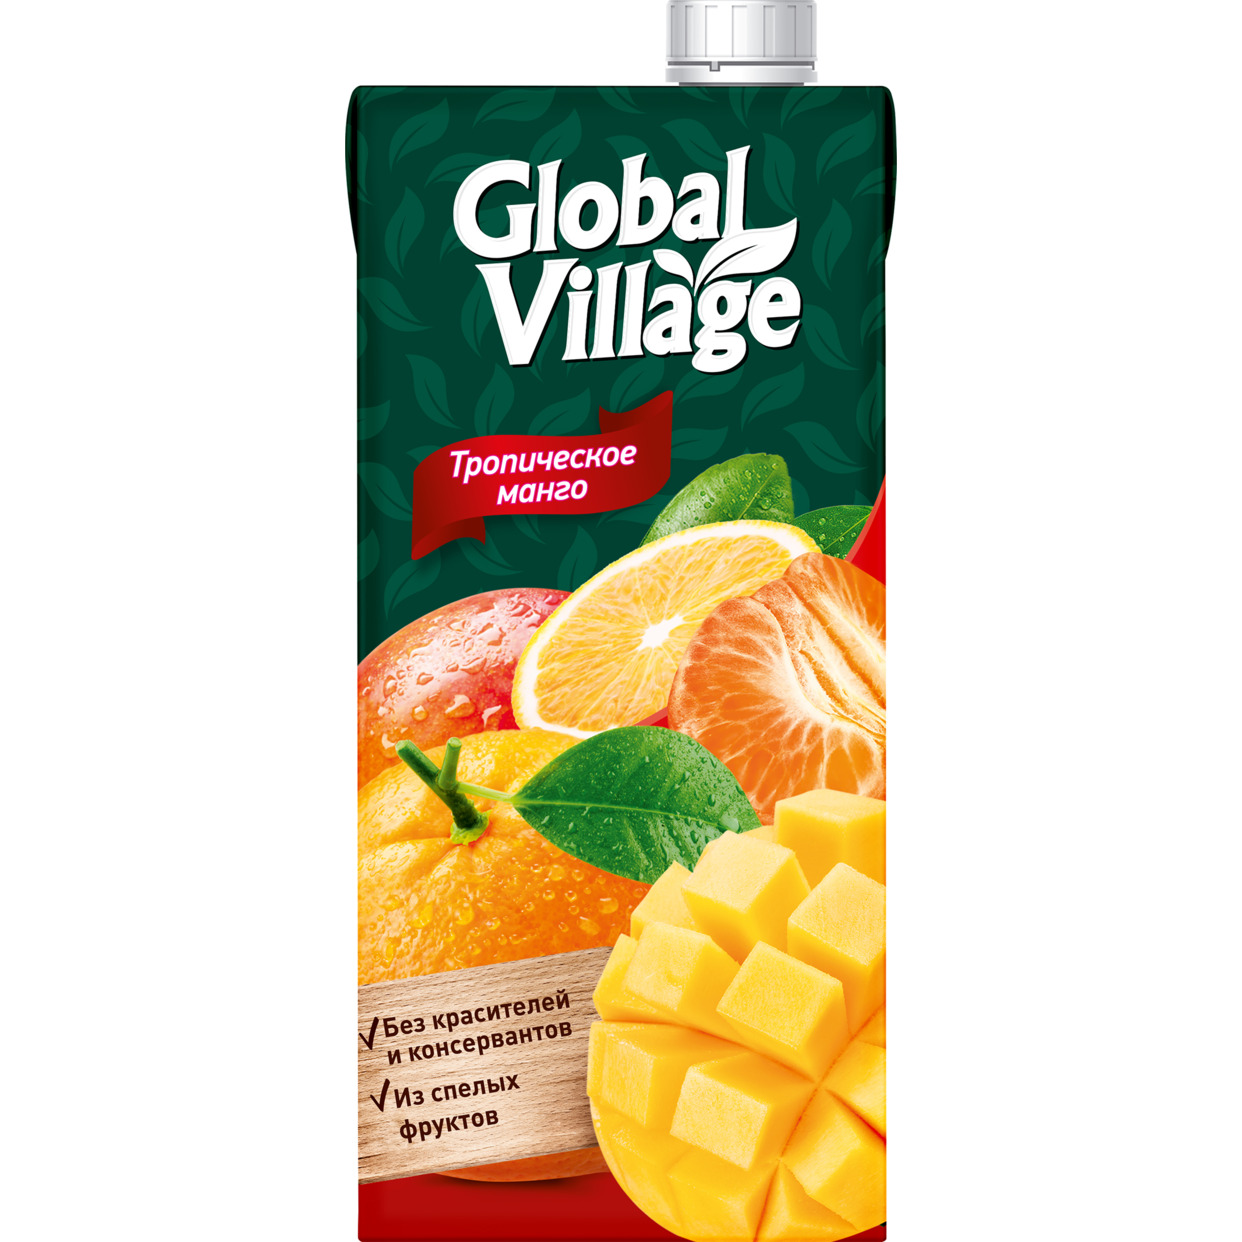 Сокосодержащий напиток из апельсинов, манго и мандаринов ТМ «Global Village» 1,93л для детей дошкольного и школьного возраста (от 3 лет)